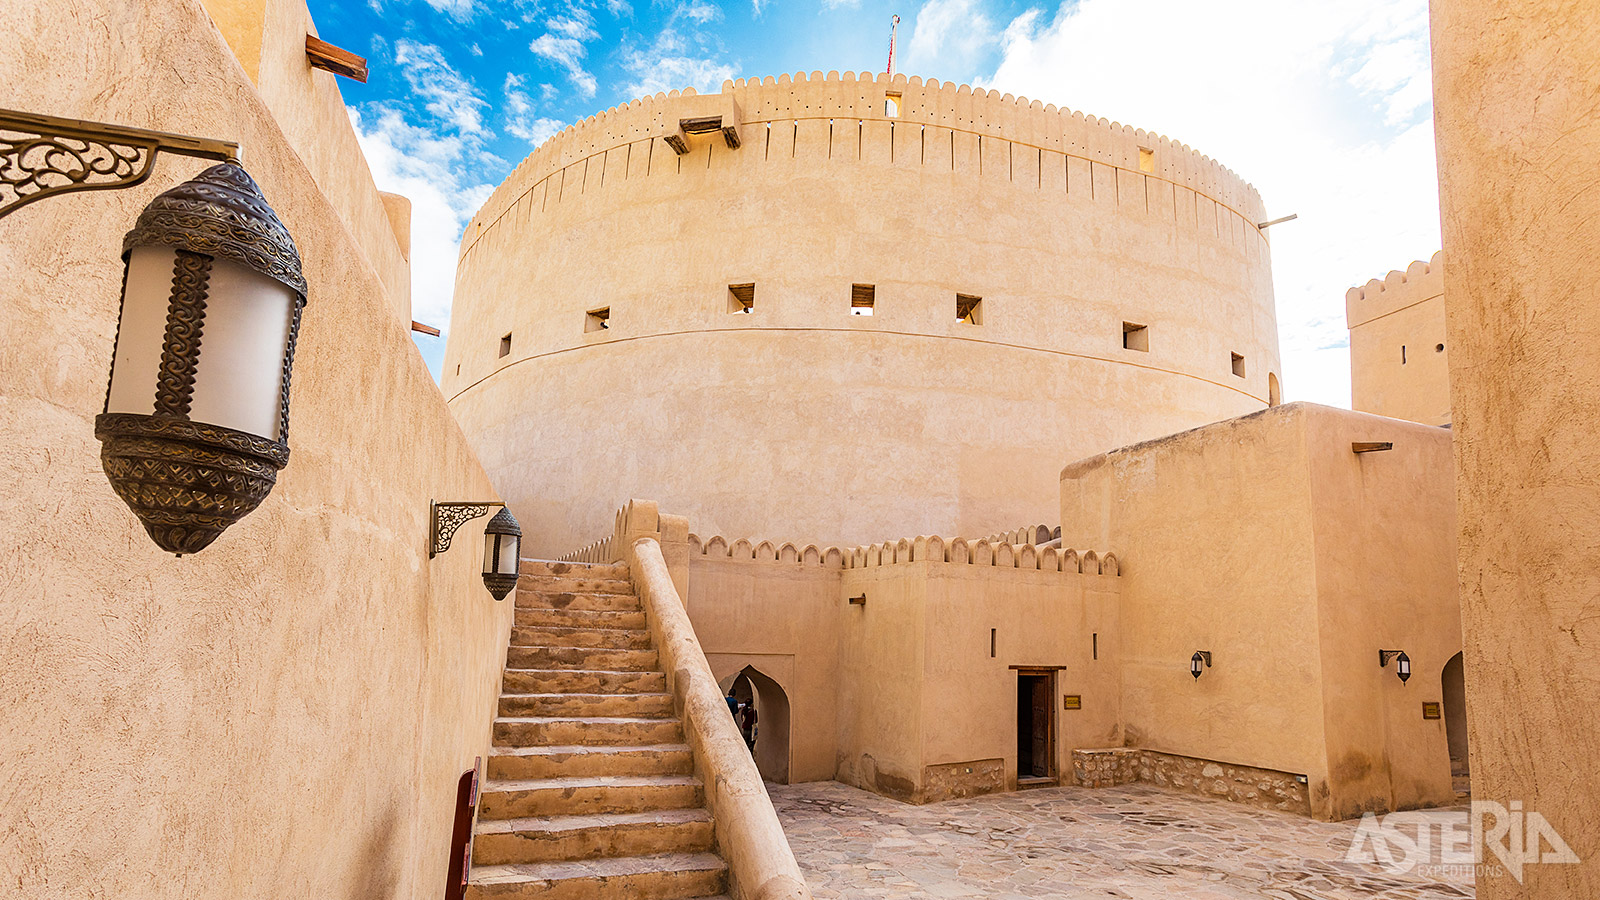 Het fort van Nizwa, gelegen naast de levendige souq, behoort tot één van de oudste forten van Oman